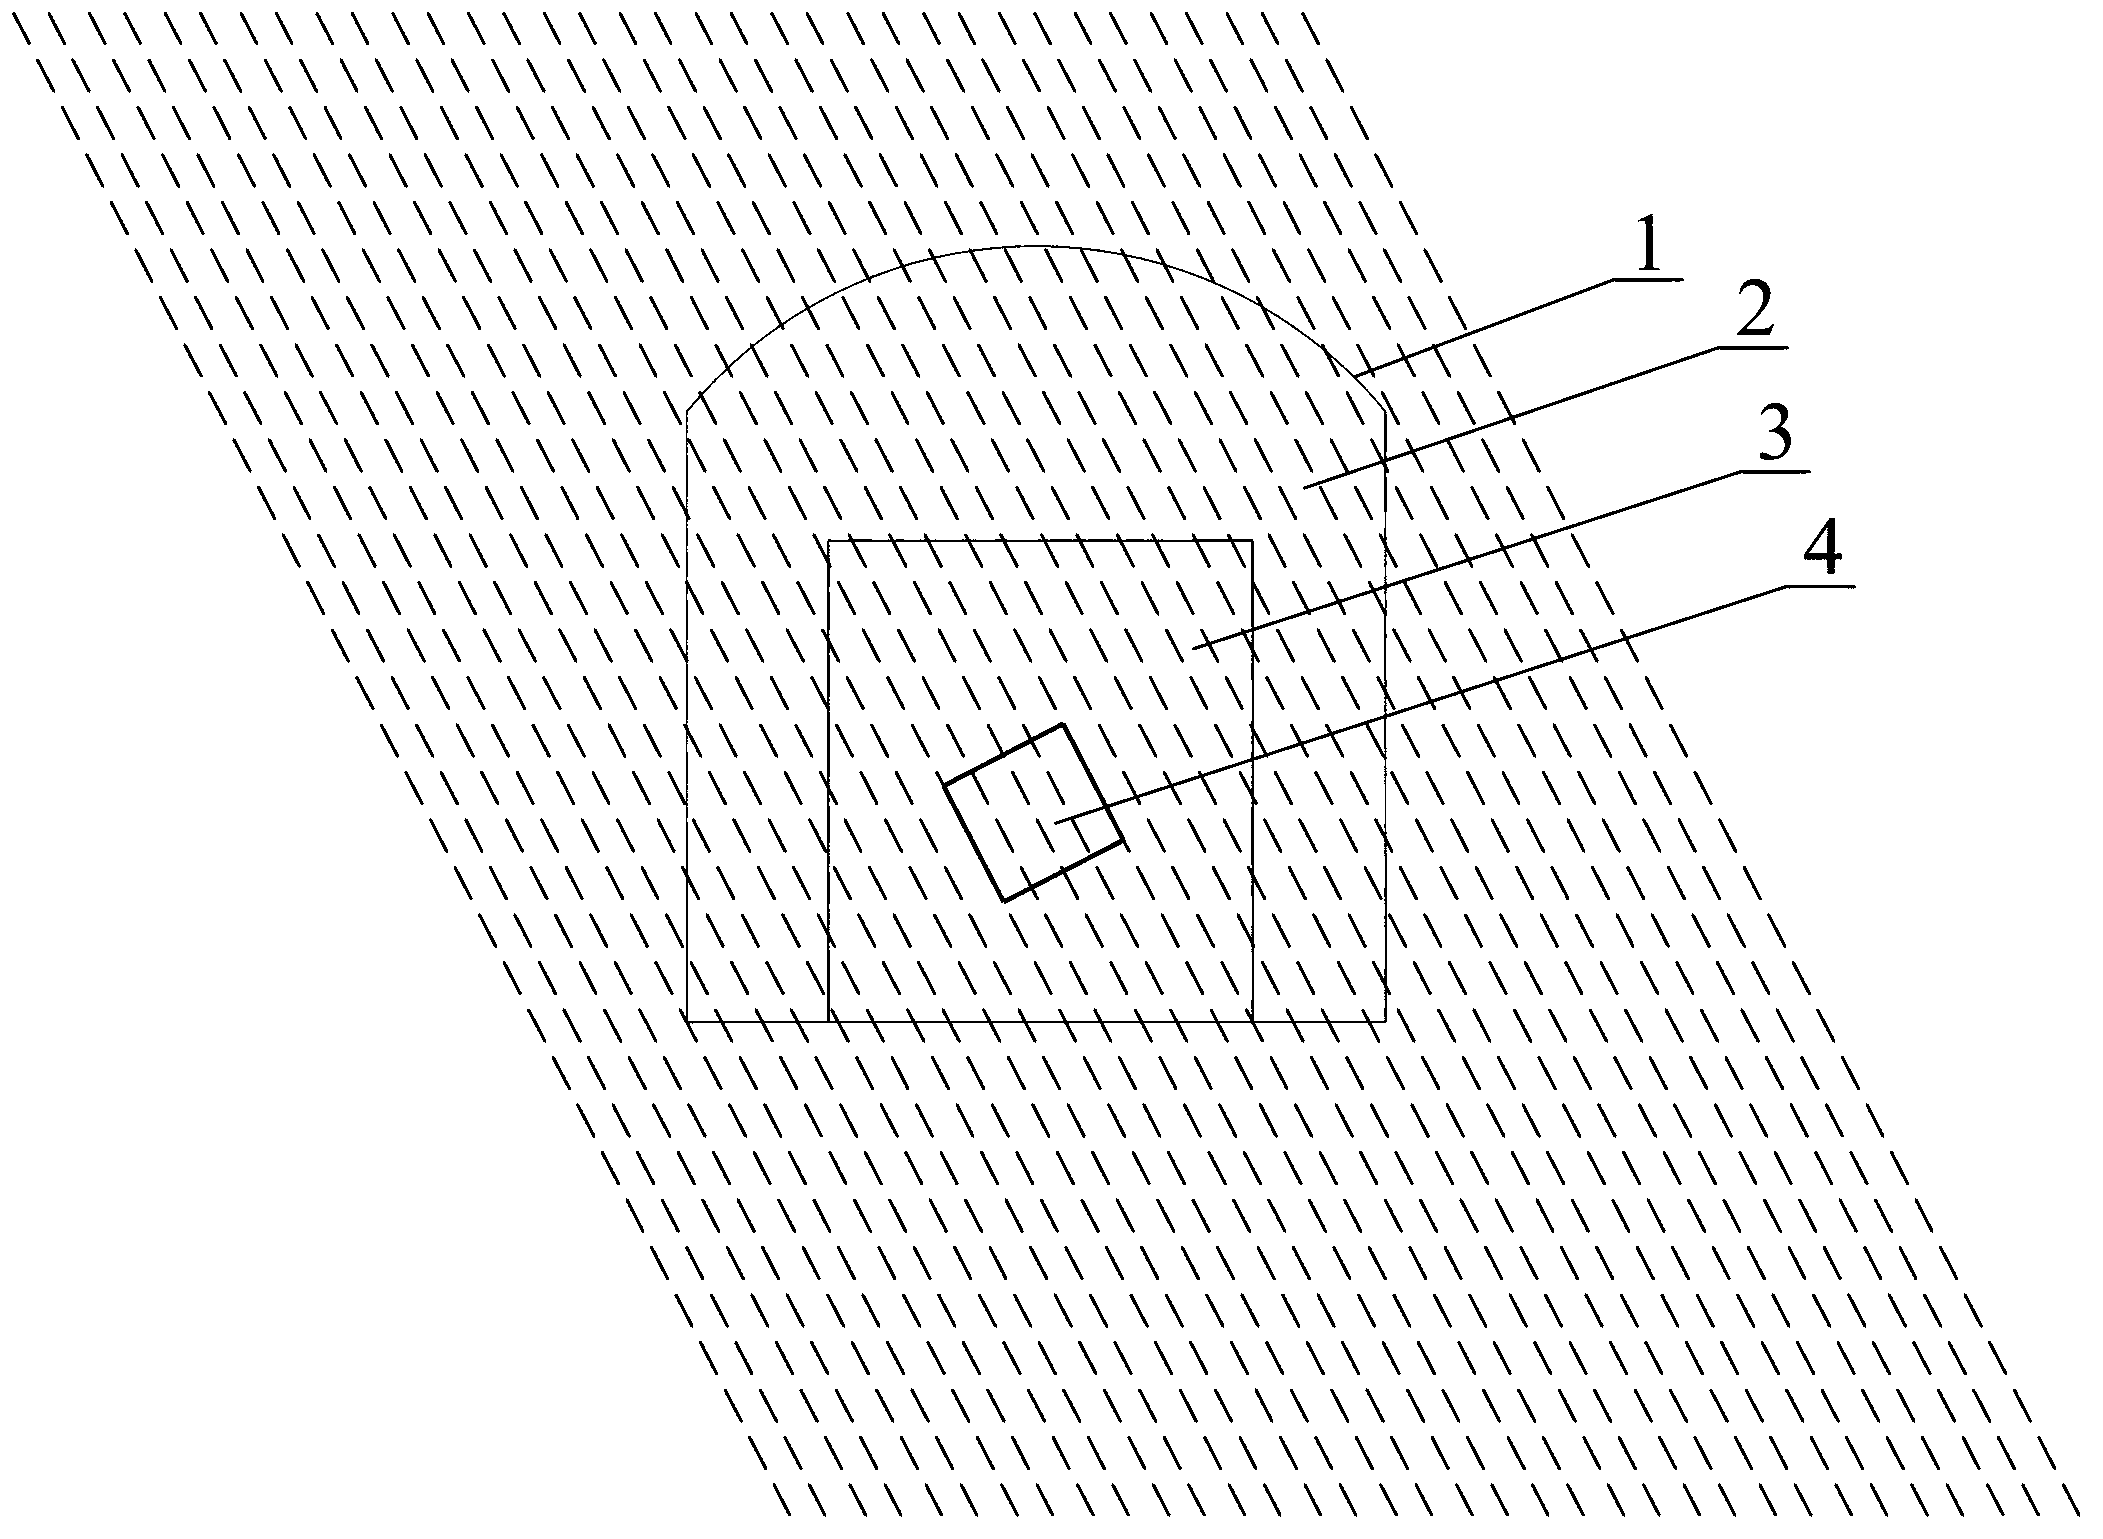 Method for determining anisotropic elastic modulus of schist